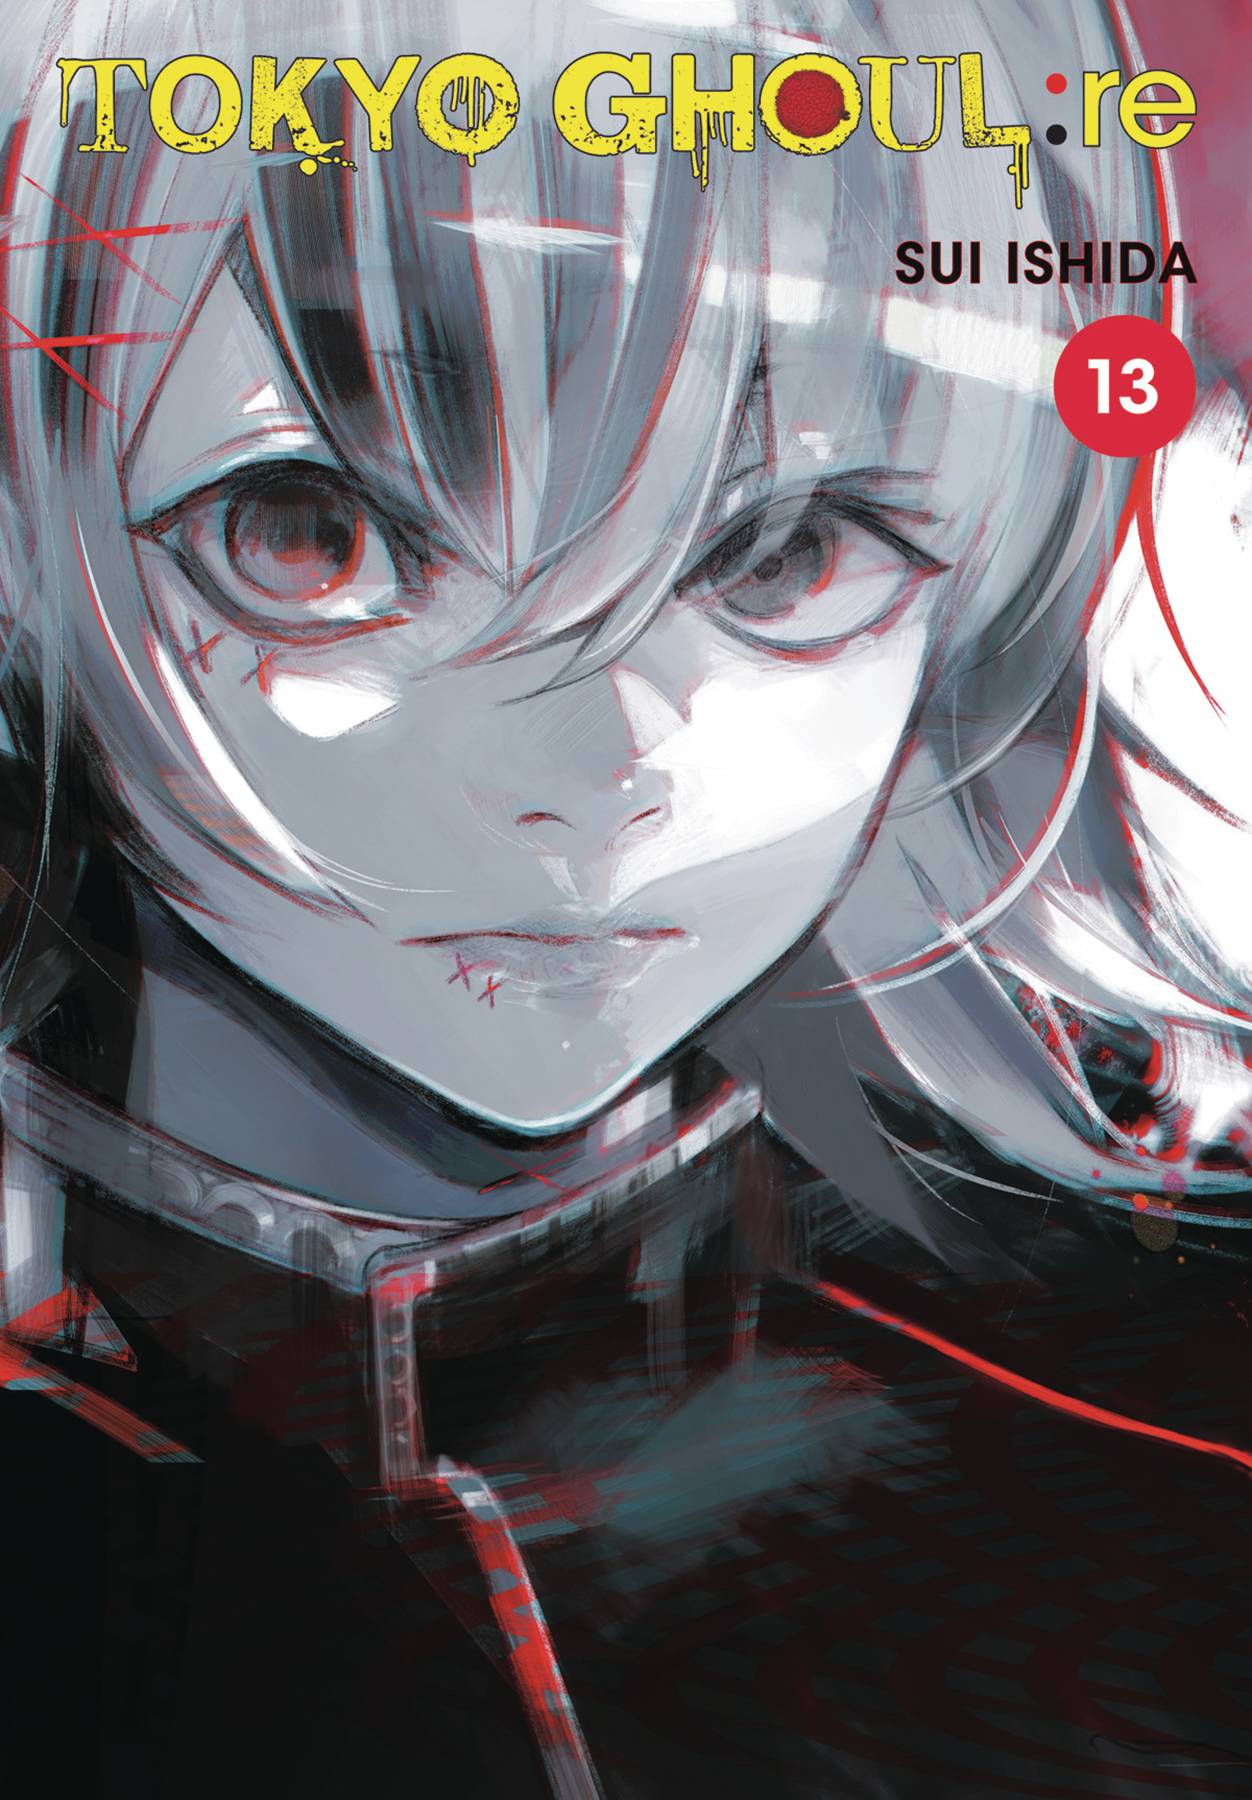 Tokyo Ghoul Re Manga Volume 13